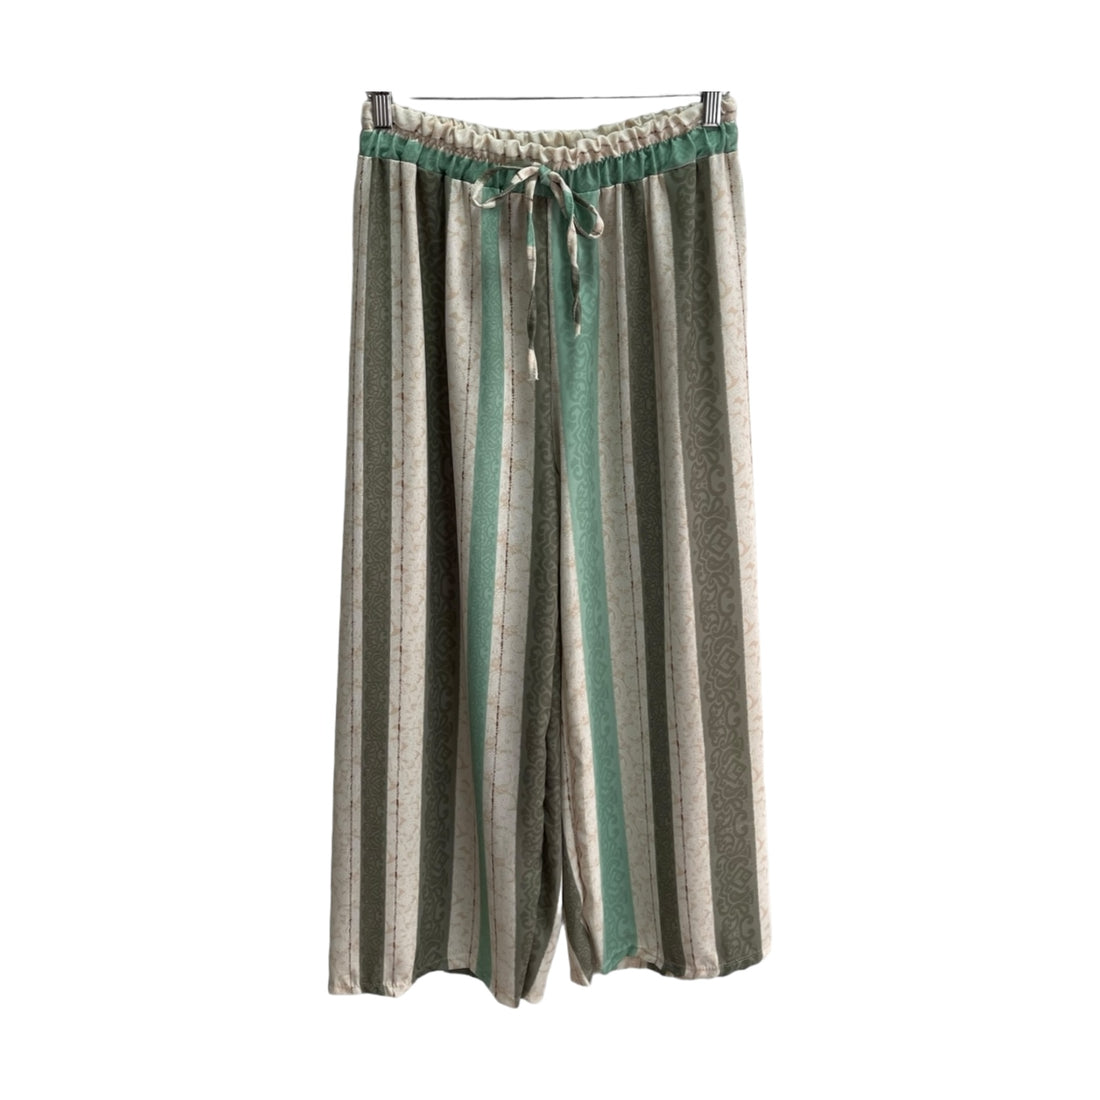 Pantalona Verde Riscas Mulher | Acexarme. Mais modelos Calças Mulher disponíveis.